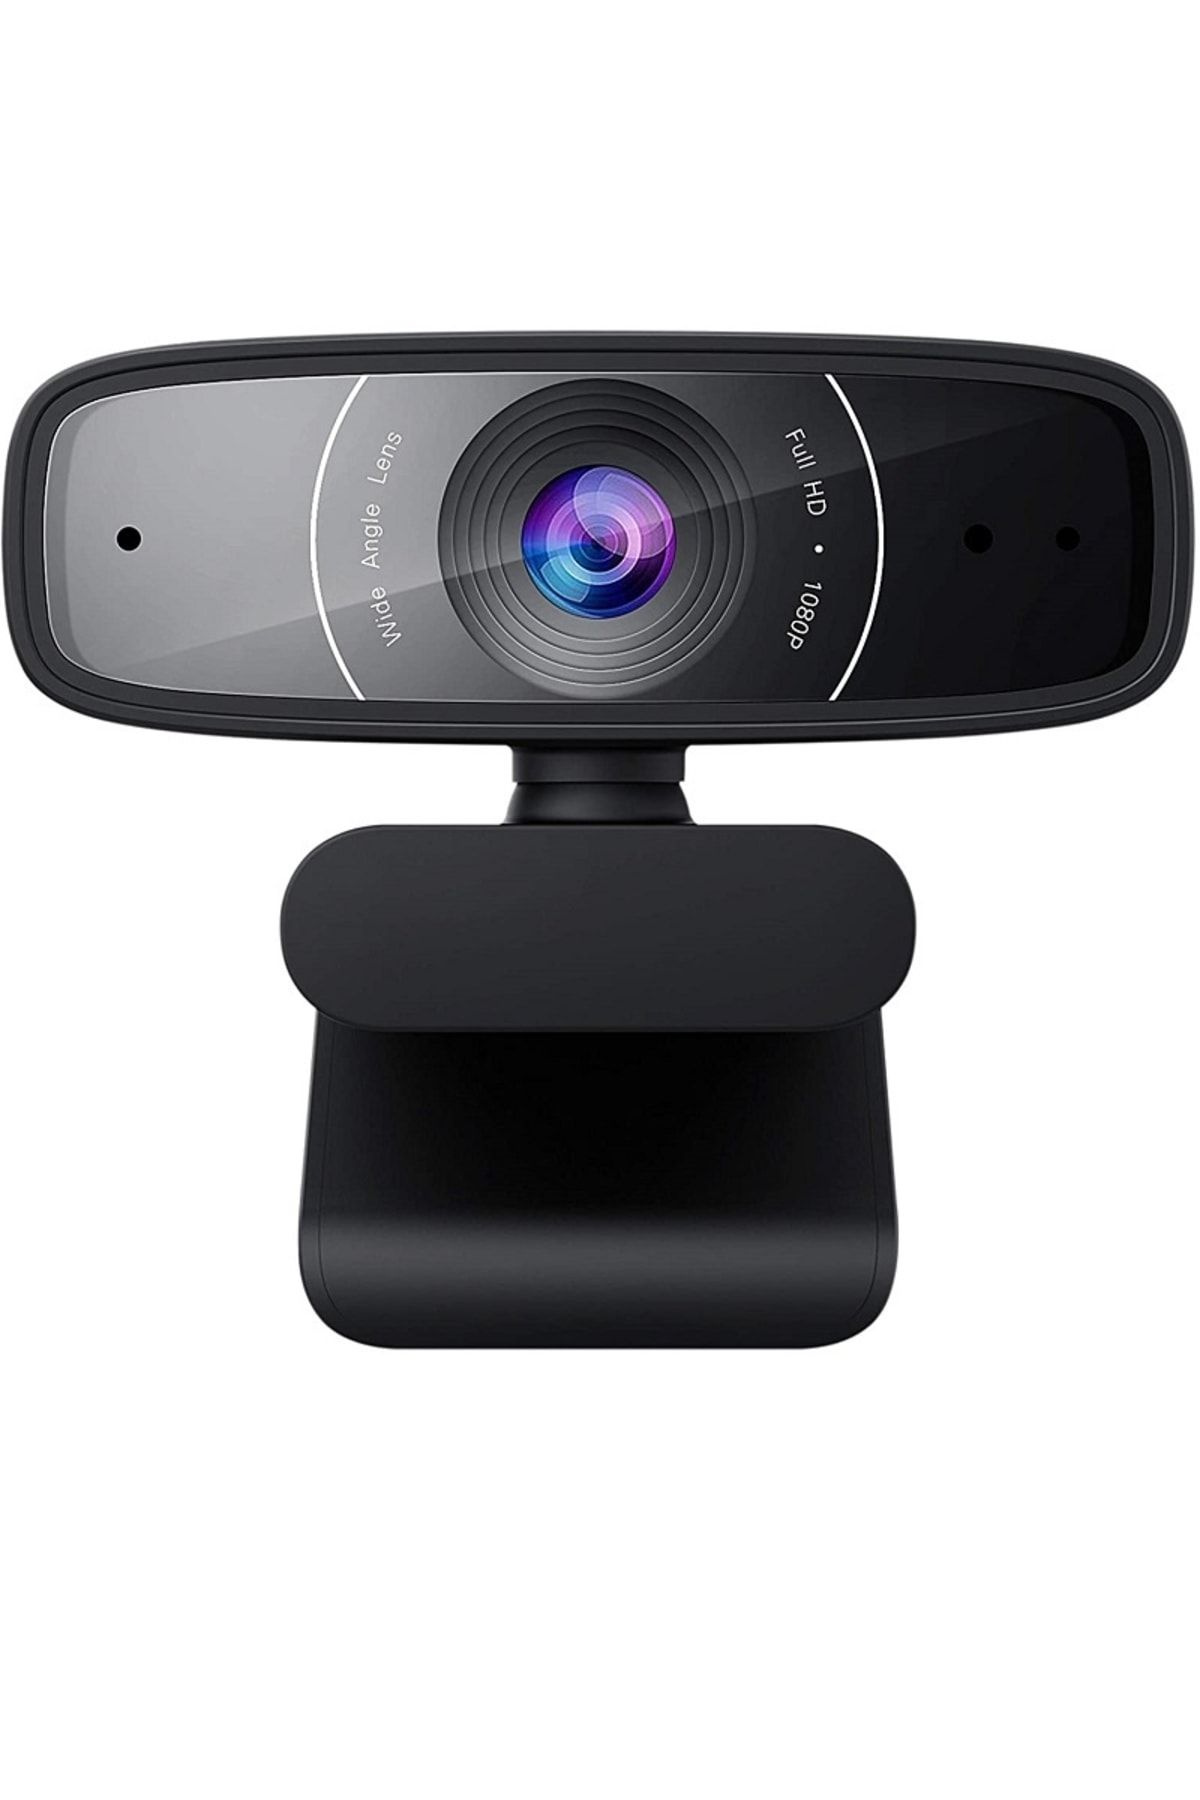 ASUS C3 1080p 30fps Kaliteli Video ve Ses Yayını Yapma Olanağı Sunan Web Kamera